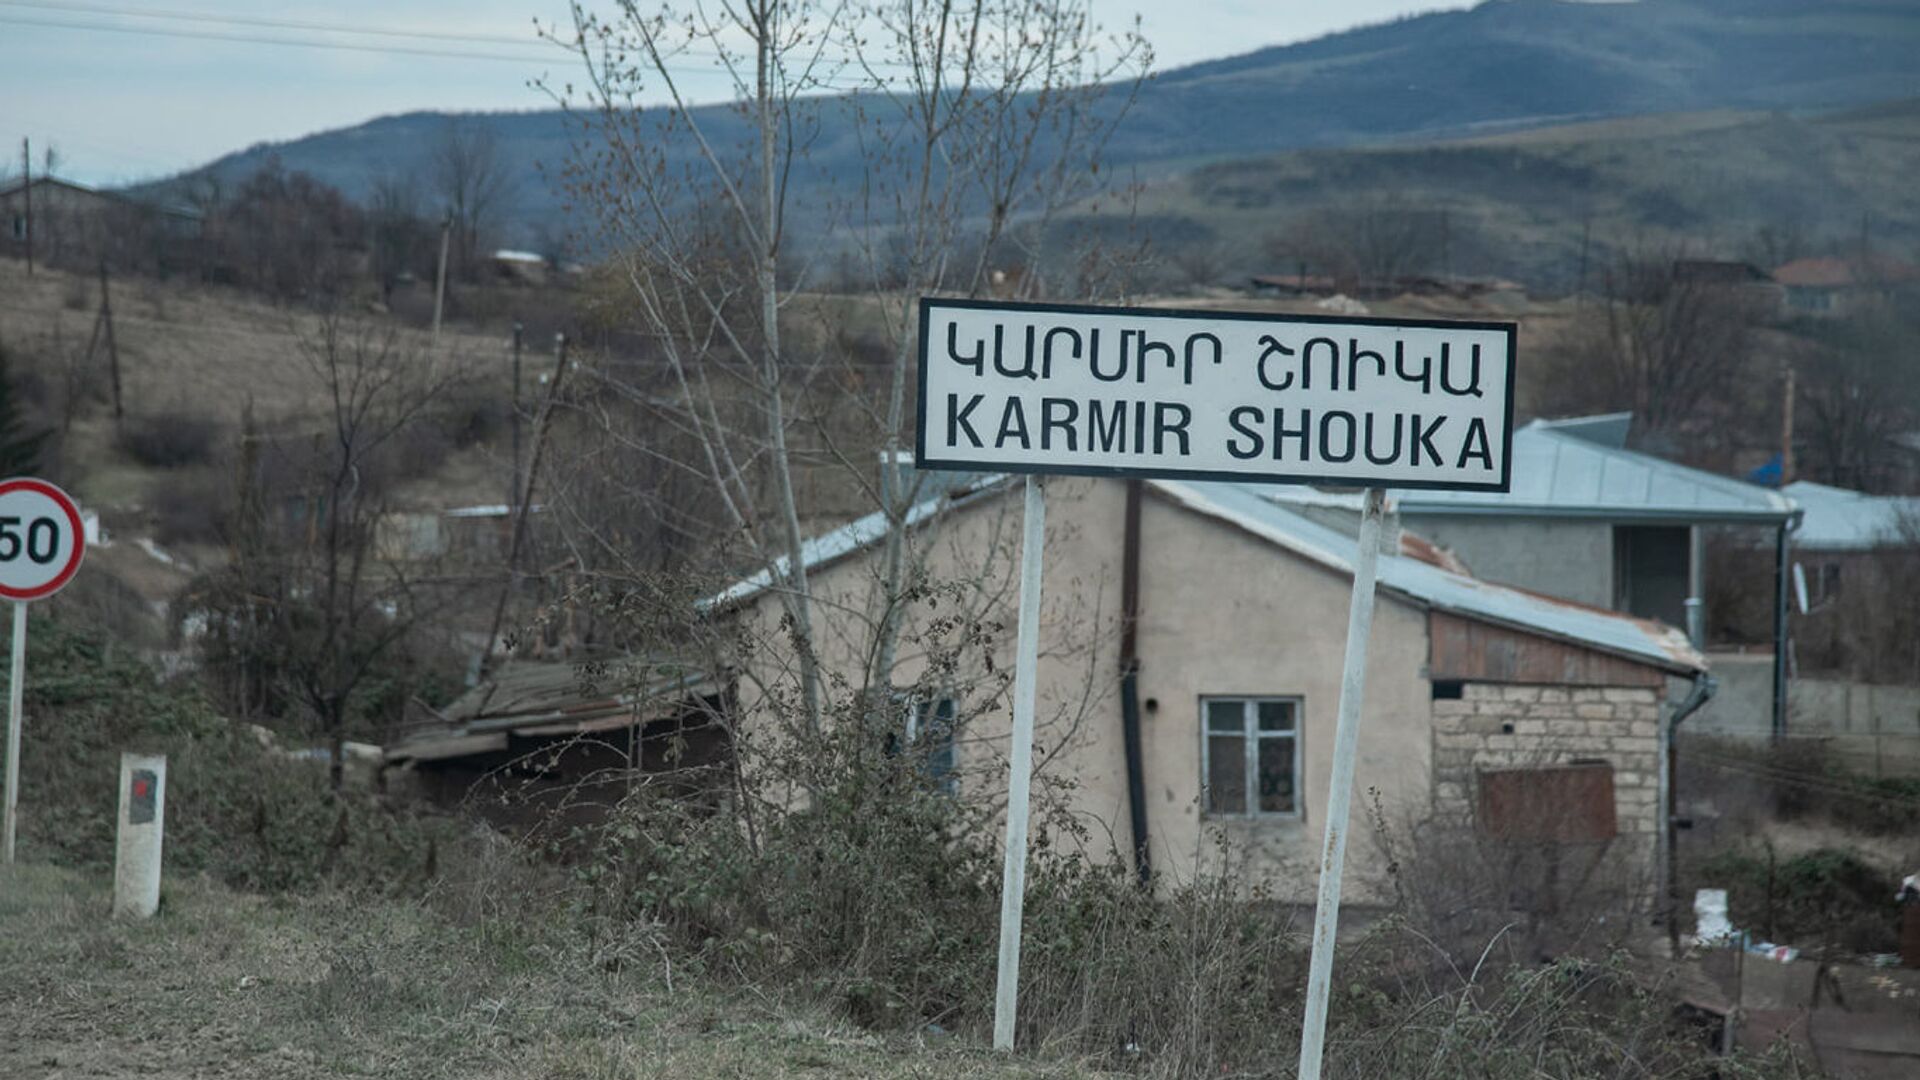 Село Кармир Шука в Карабахе - Sputnik Արմենիա, 1920, 24.01.2022